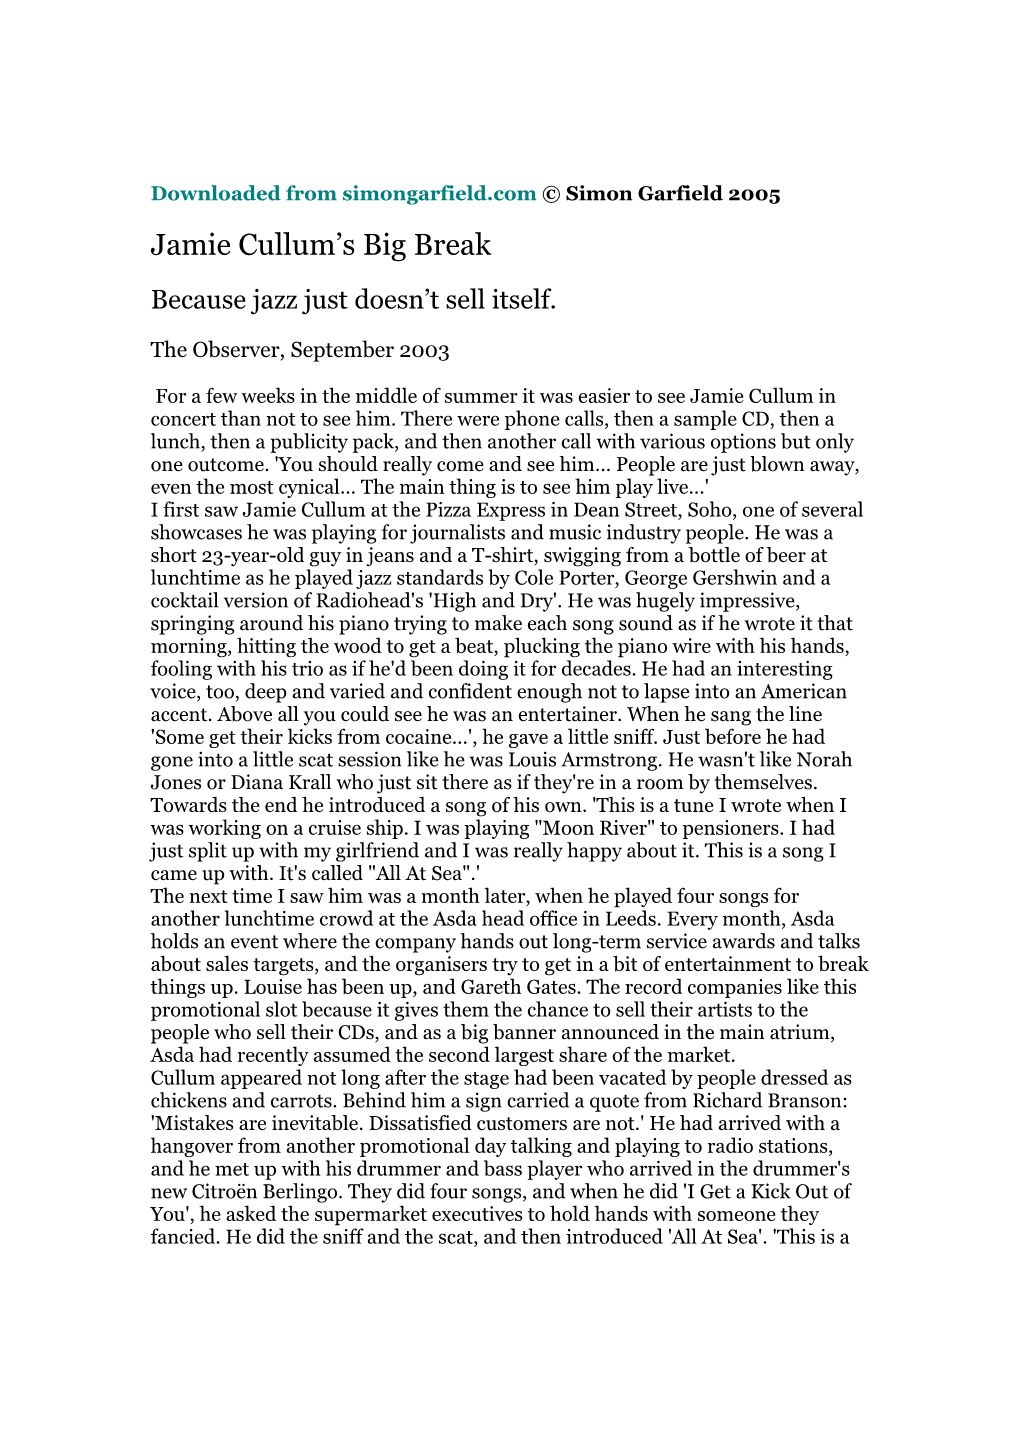 Jamie Cullum's Big Break